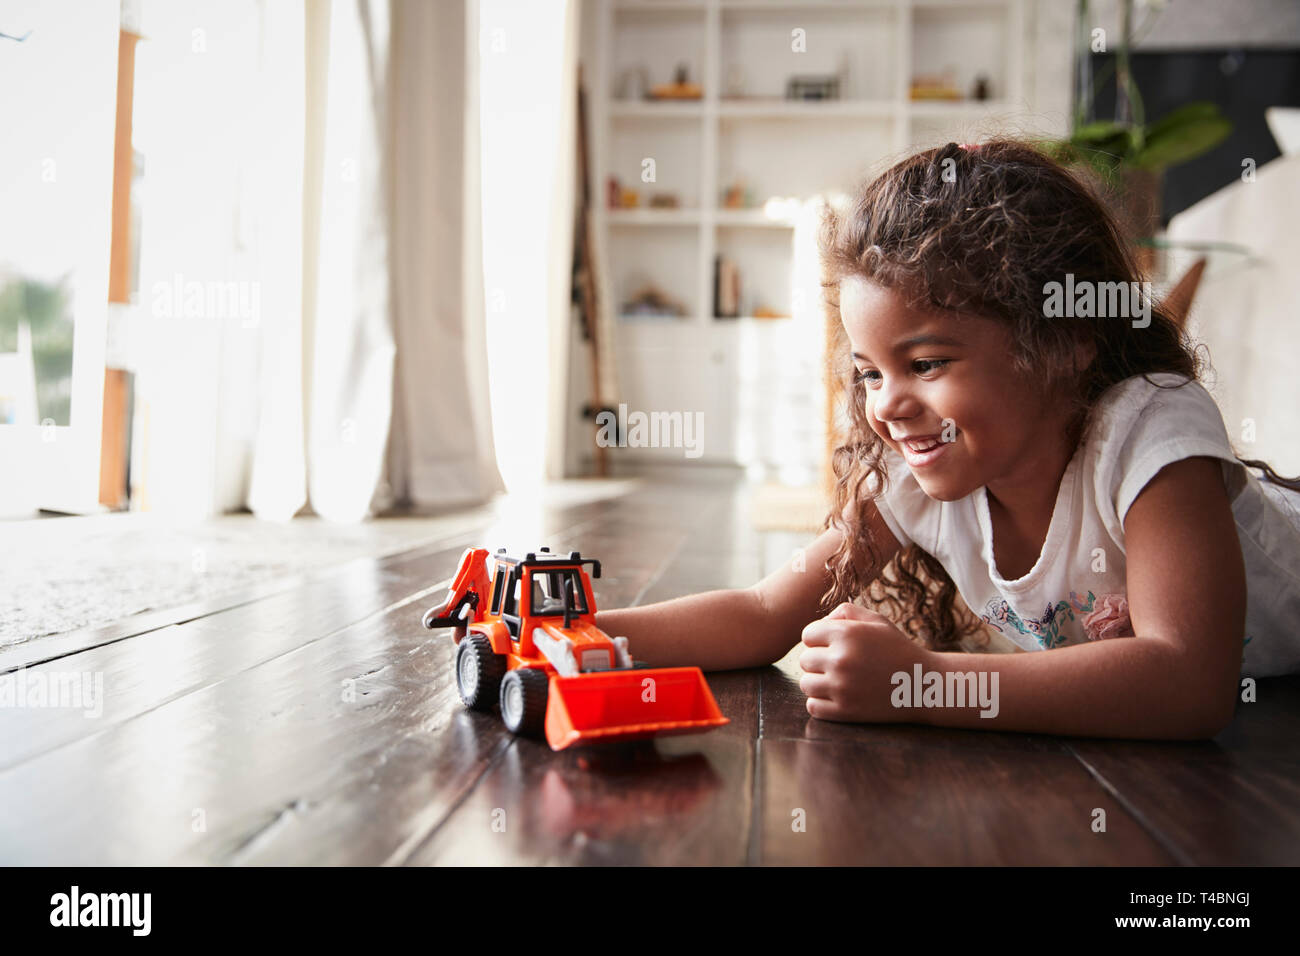 Junge Hispanic Mädchen liegt auf dem Fußboden im Wohnzimmer spielen mit einem Spielzeug bagger Stapler Stockfoto